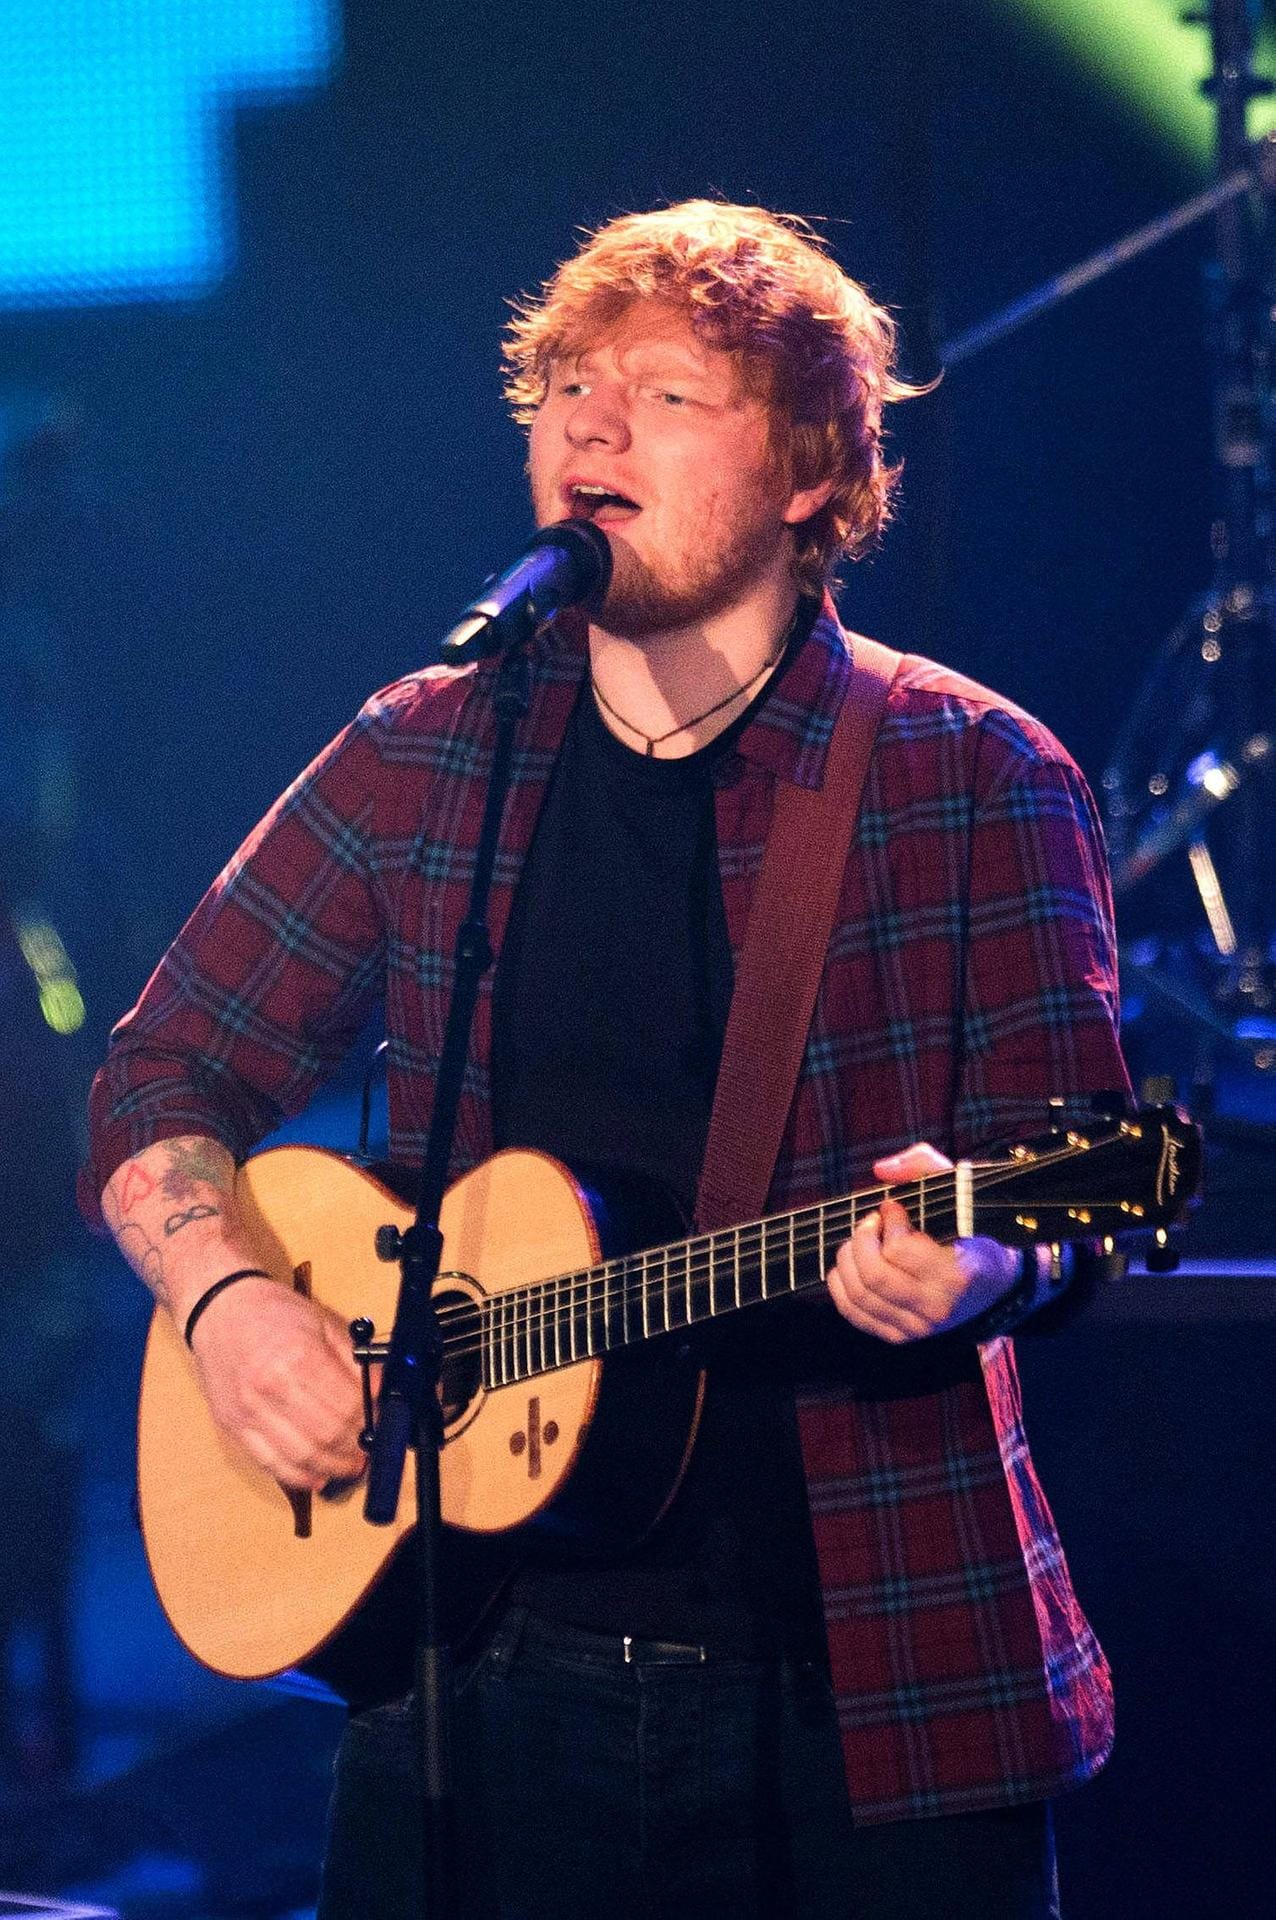 9. Platz: Sänger Ed Sheeran ist der bestverdienende Solo-Musiker und hat 110 Millionen US-Dollar (rund 94 Millionen Euro) verdient.